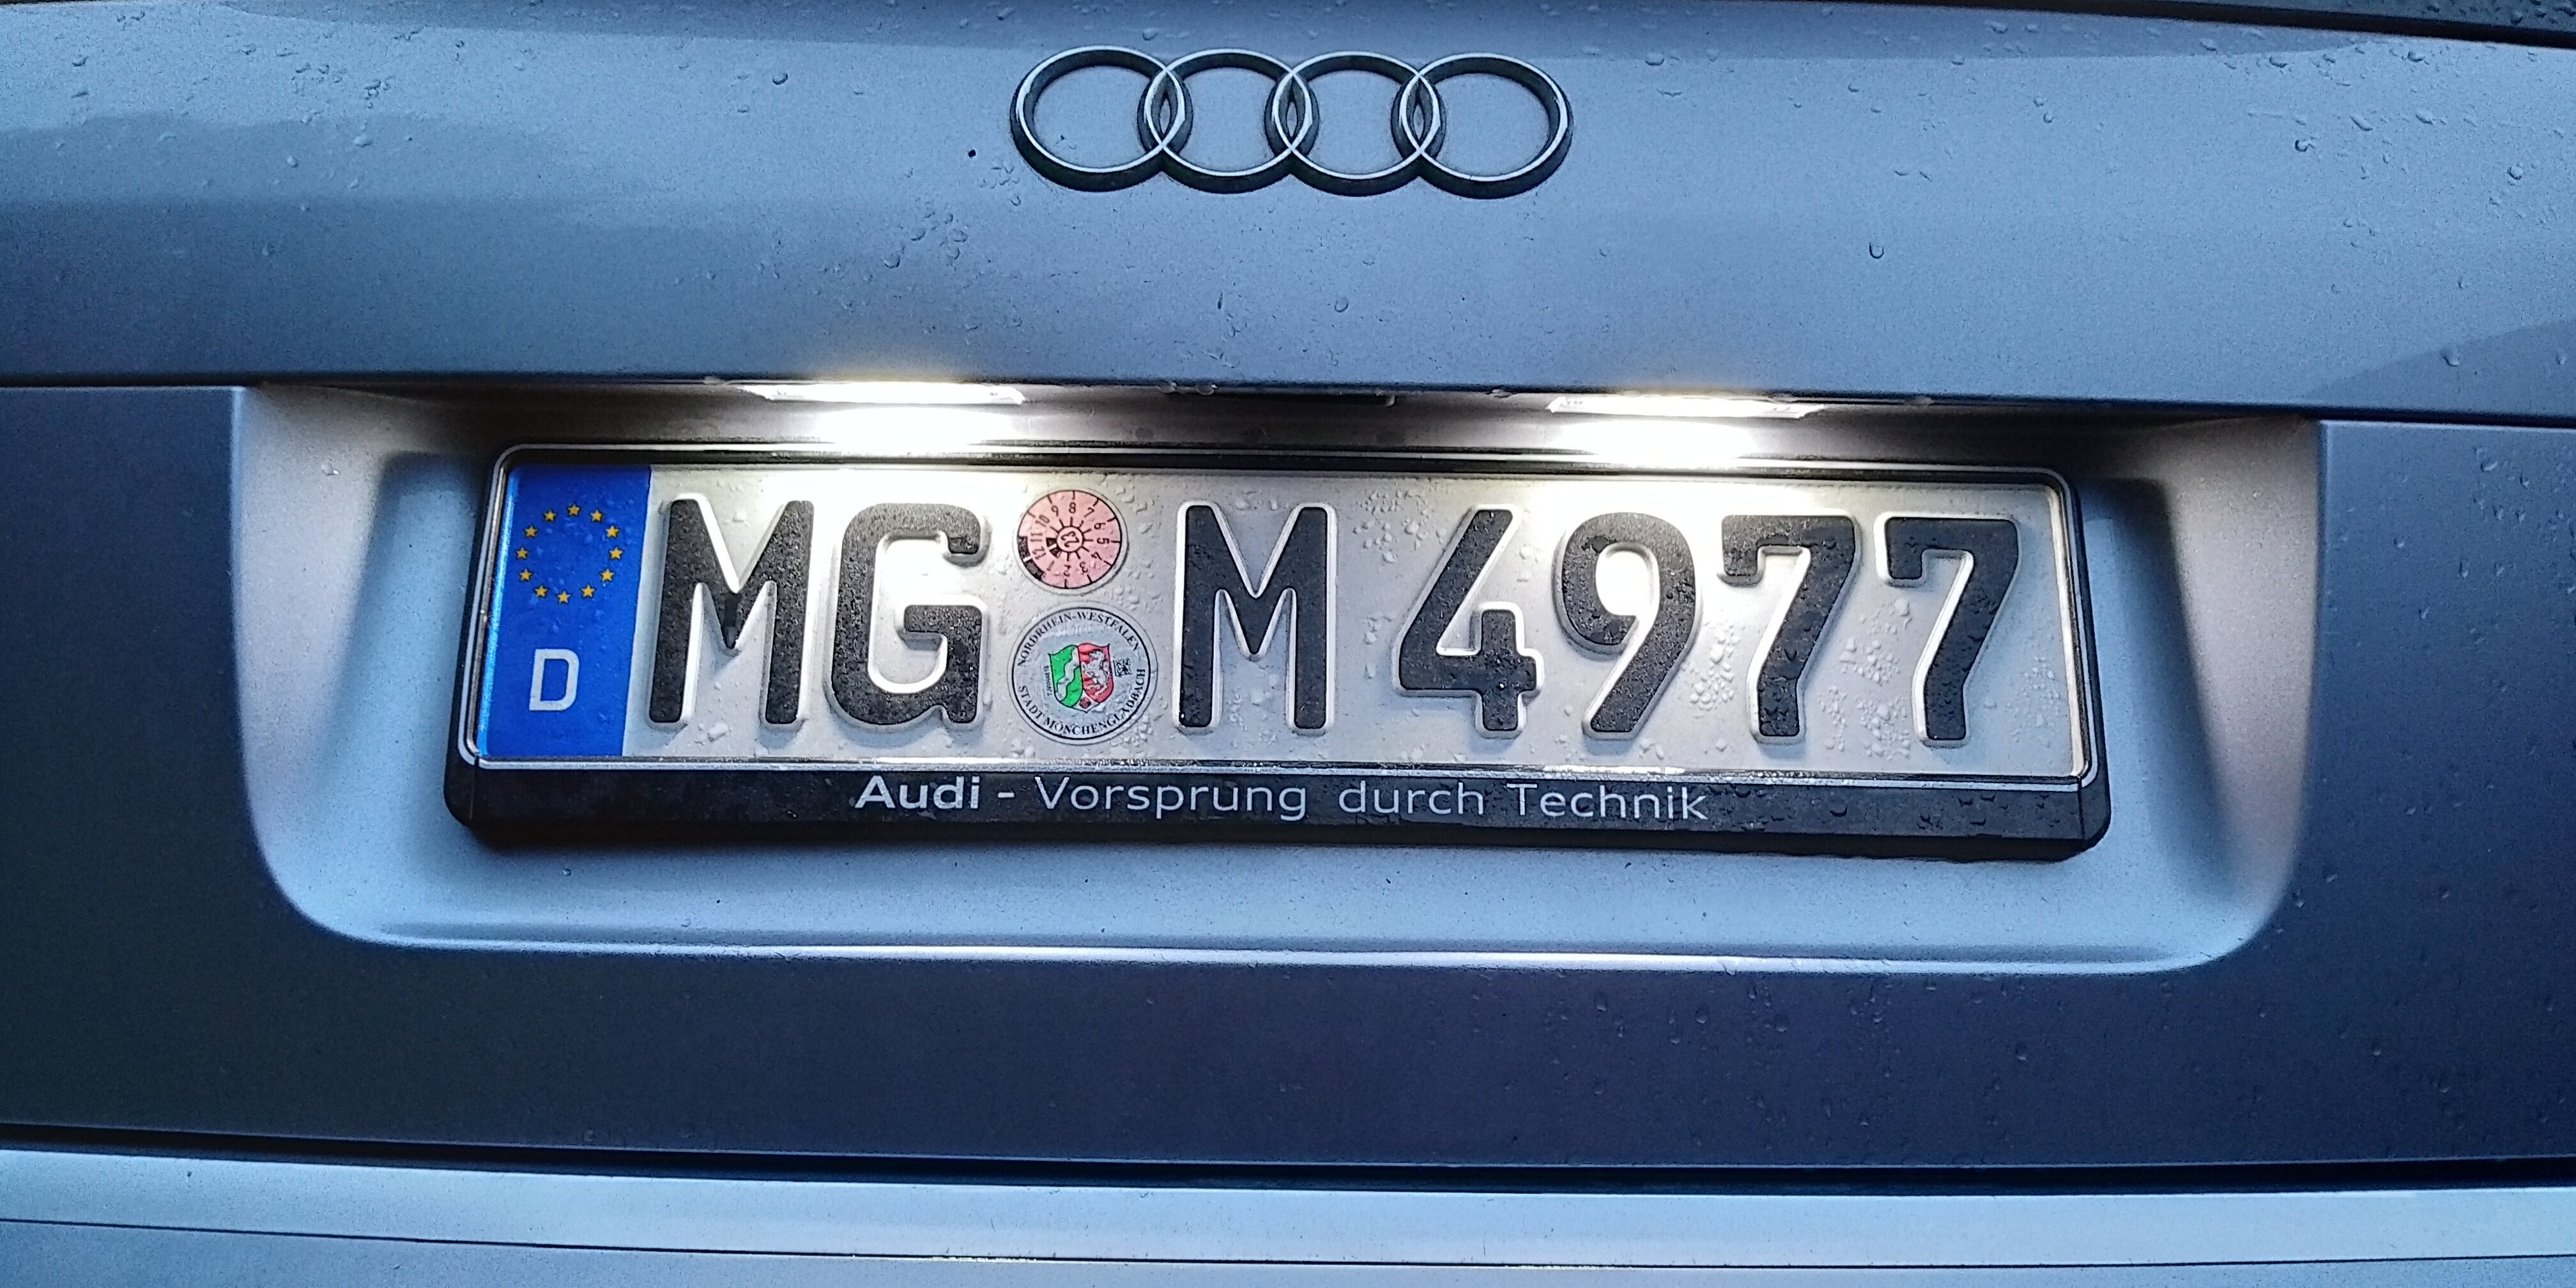 Audi Kennzeichenbeleuchtung ist kompatibel für vielen